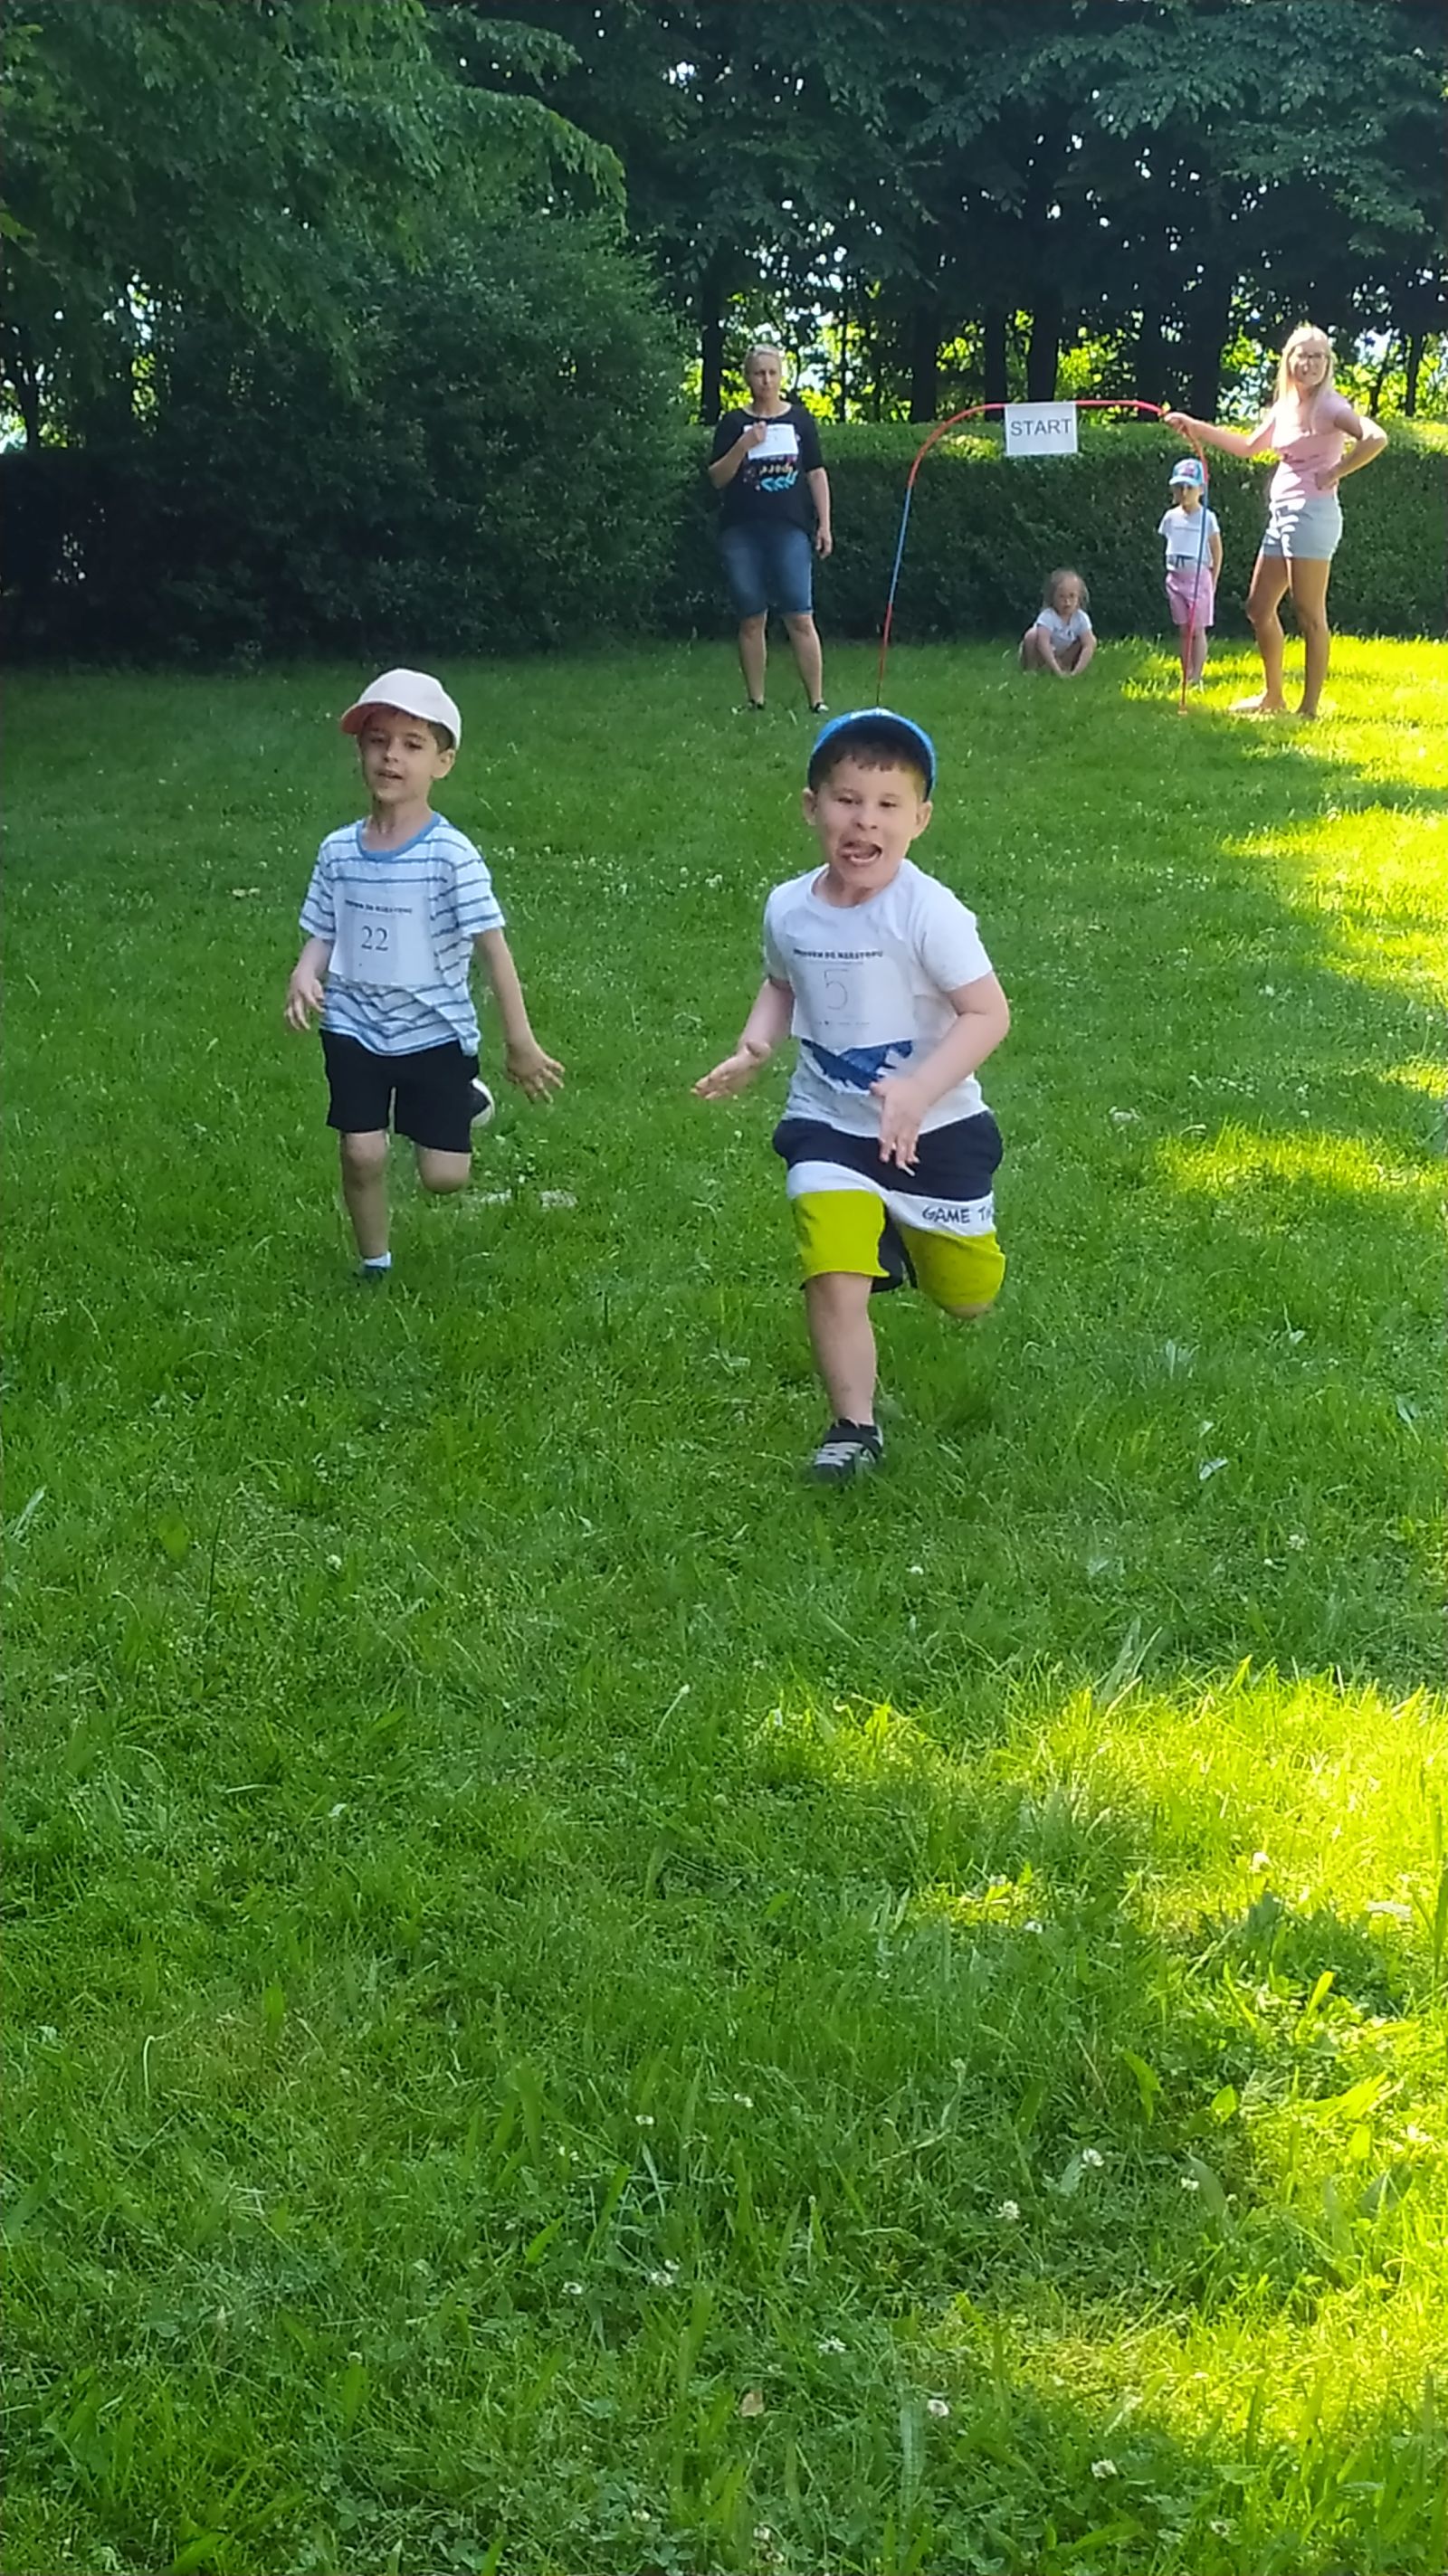 dwaj chłopcy biegną do mety